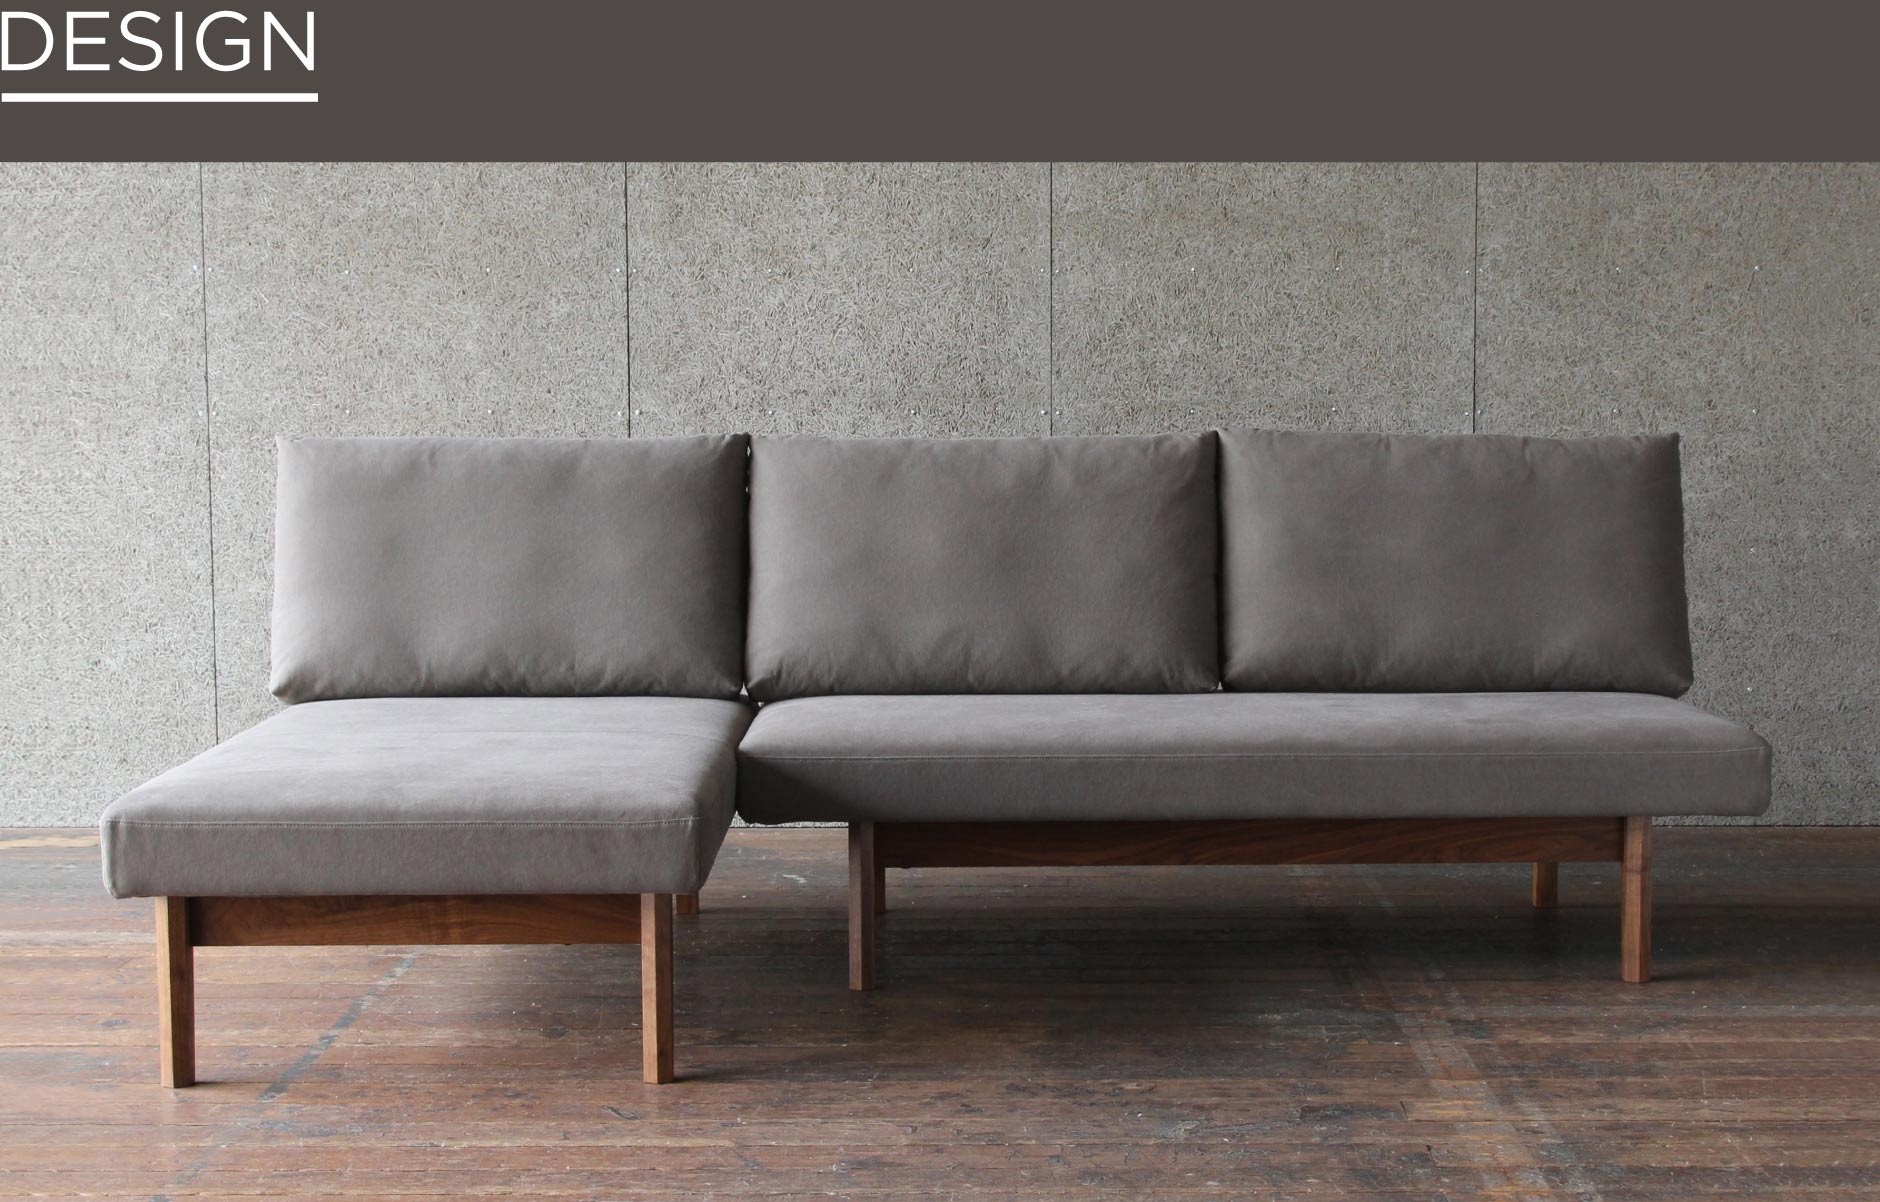 足を伸ばしてゆったりと寛げ、組み合わせるとL字型ソファにもカスタム可能な家具です。大阪店で掛け心地をお確かめください。